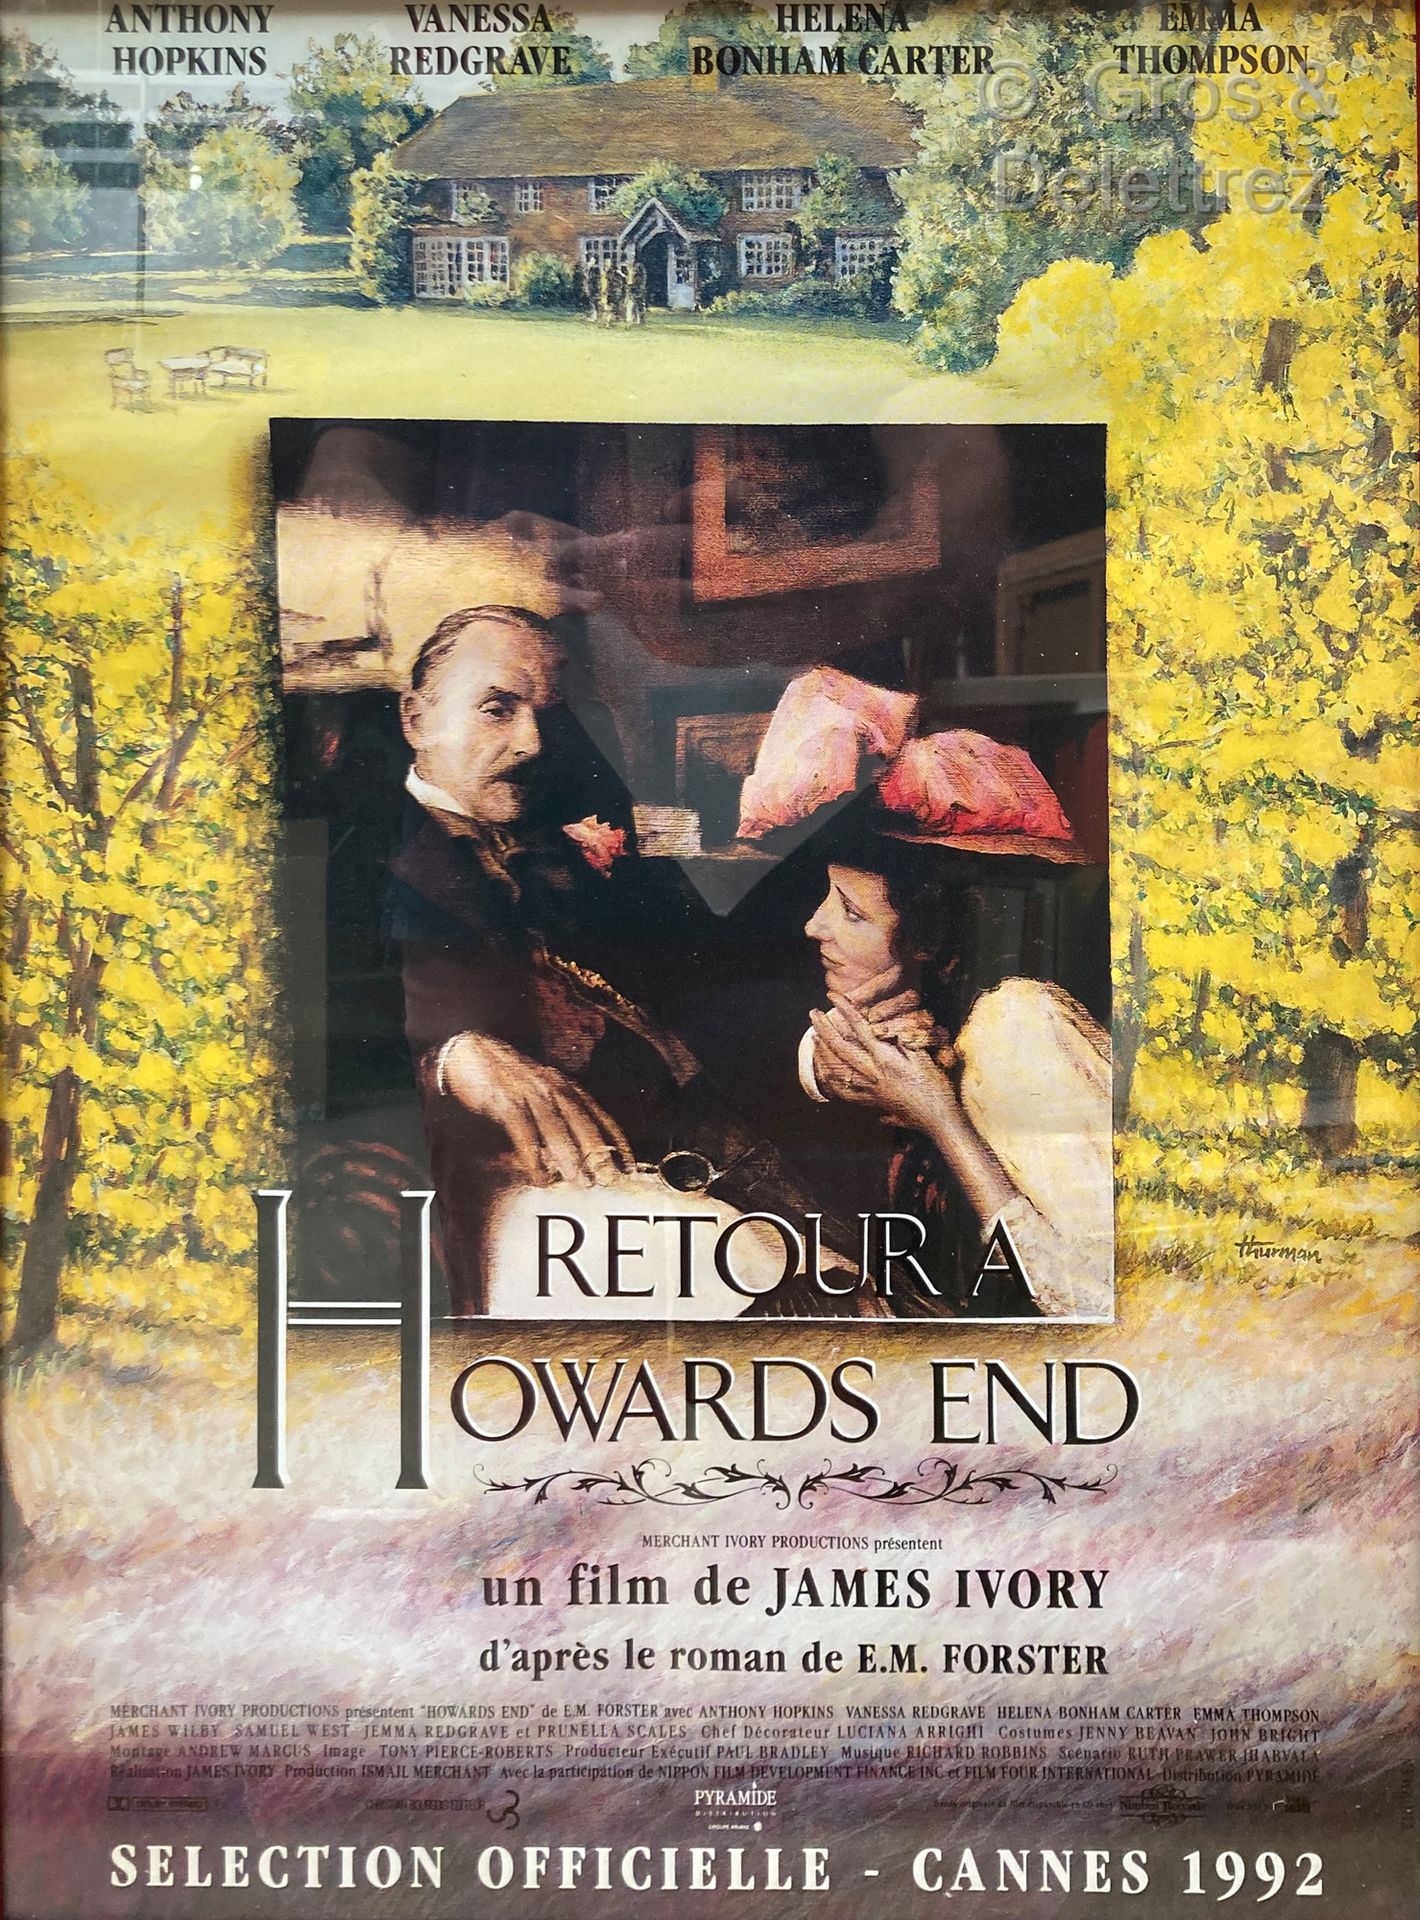 James IVORY VOLVER A HOWARDS END

Cartel de la película

54 x 39 cm bajo vidrio